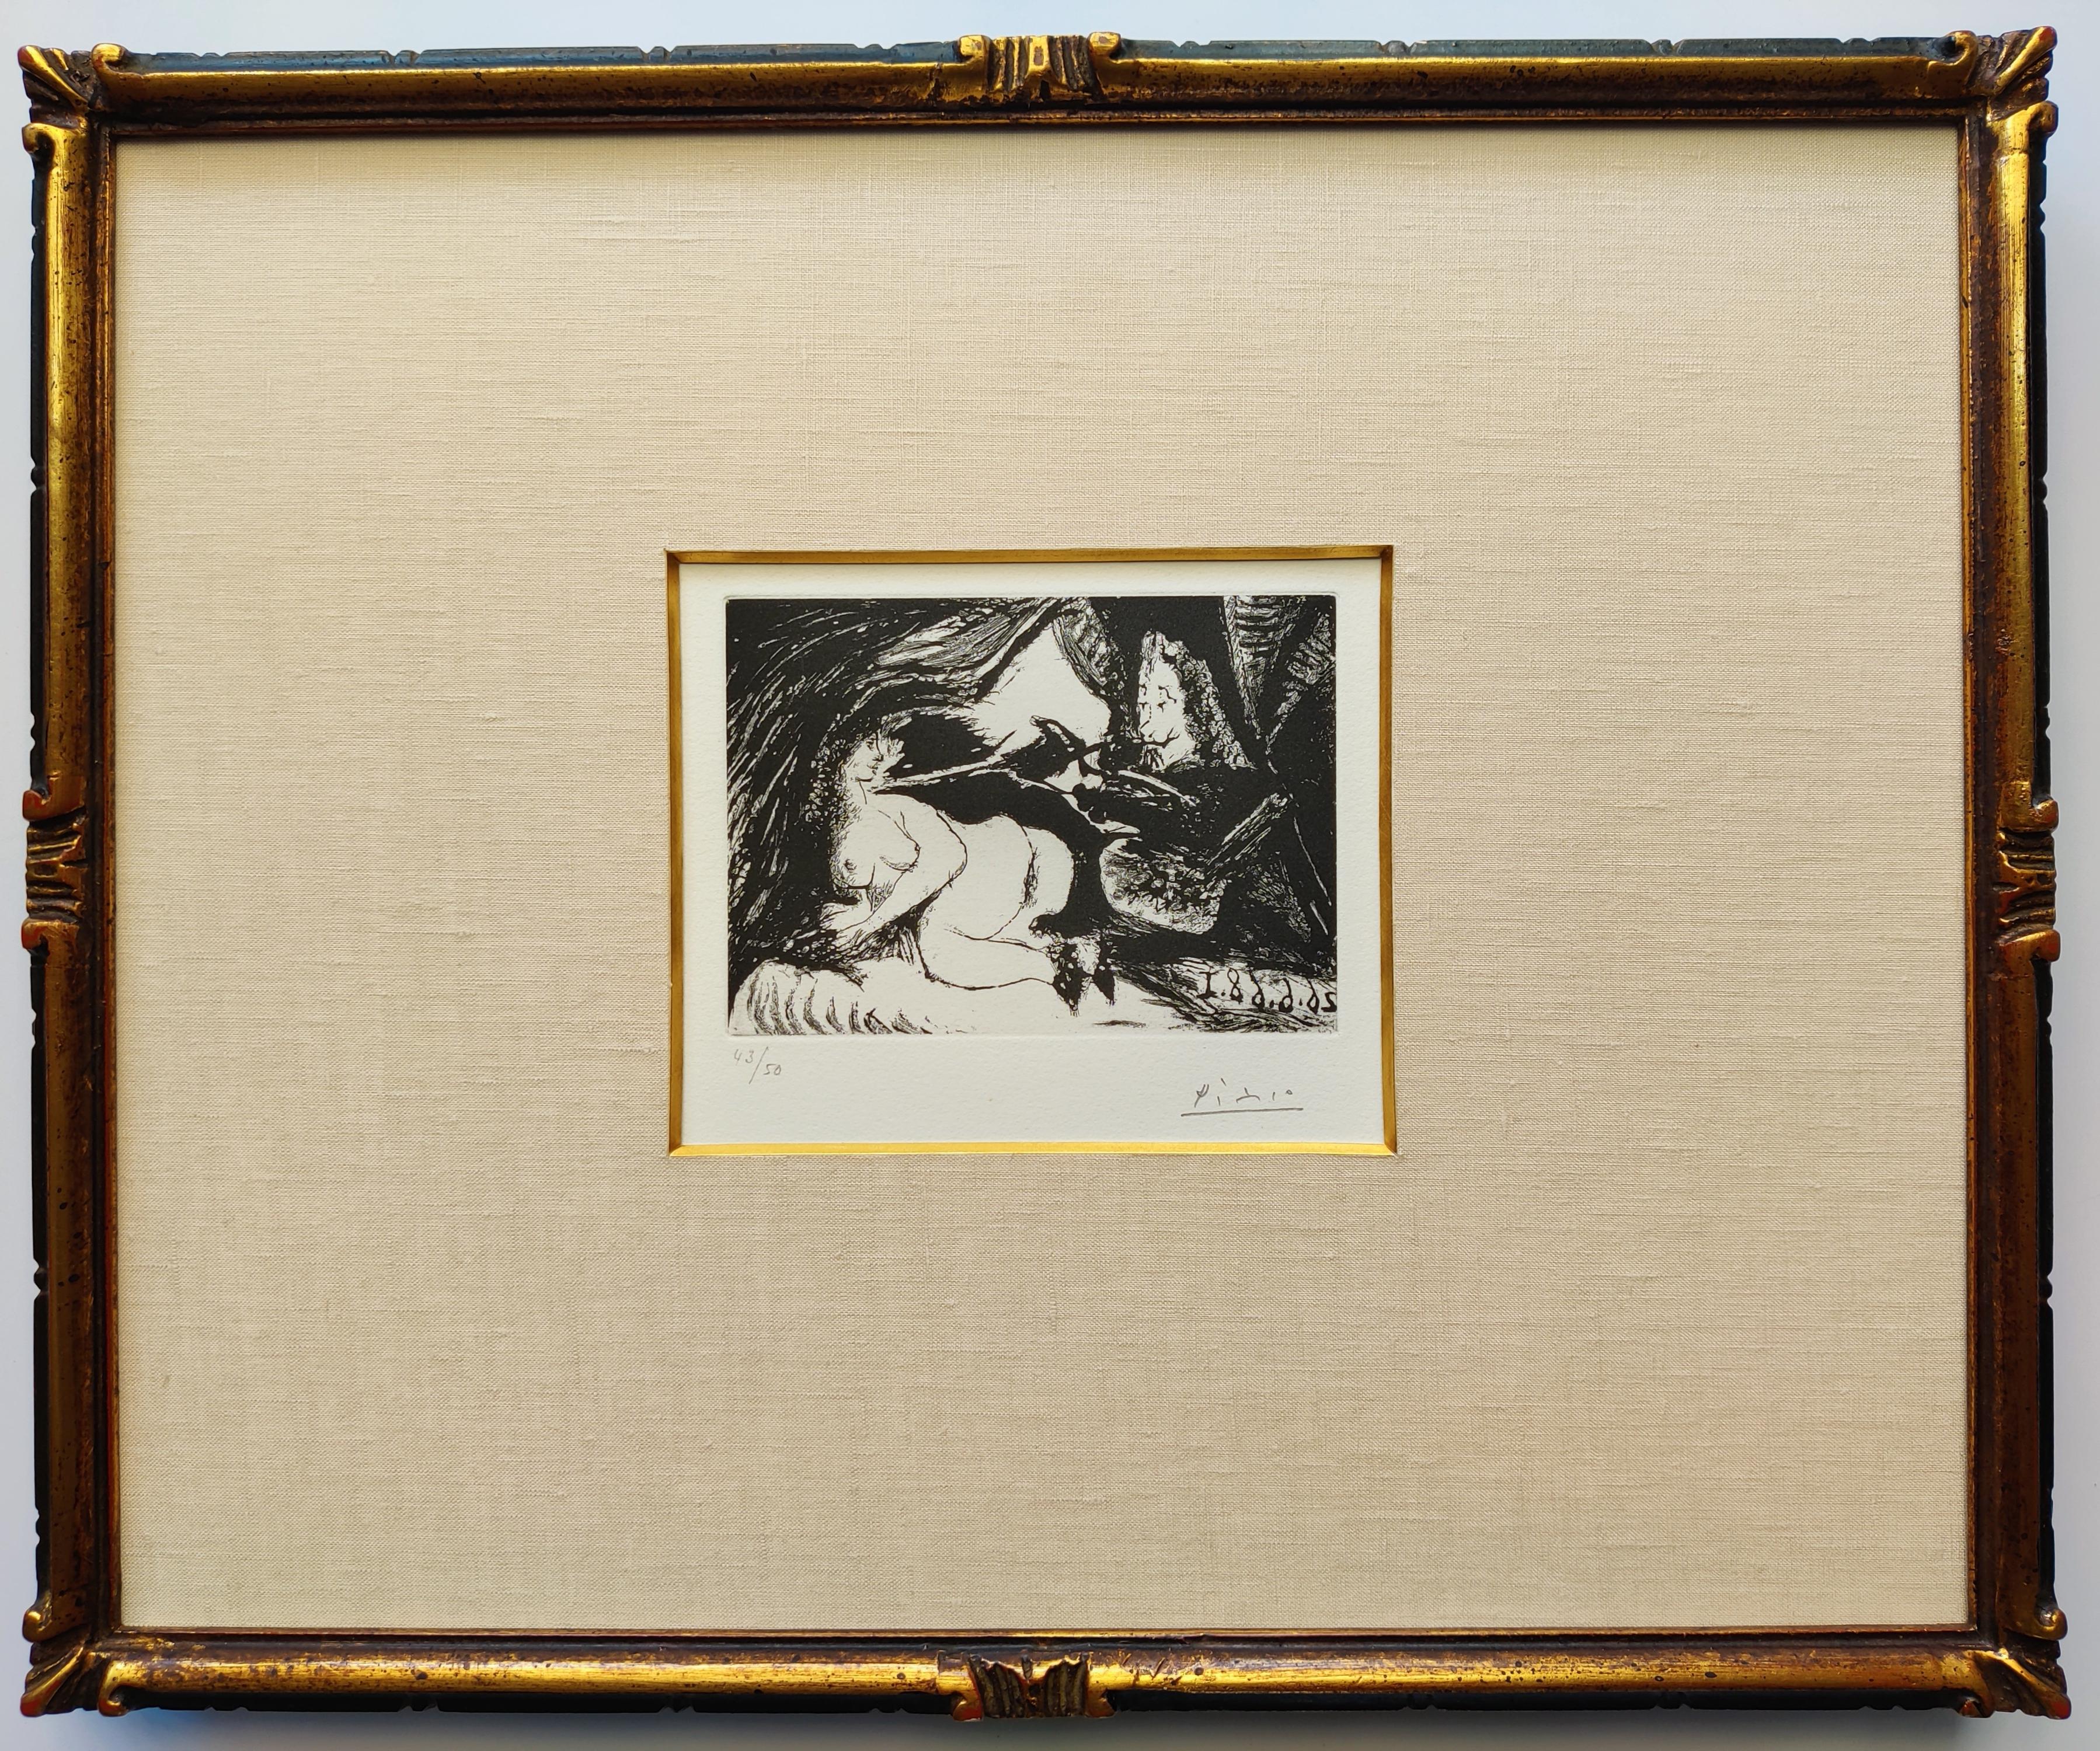 Pablo Picasso
Peintre peignant la nuque de son jeune modele, 1968
From La Serie 347
Aquatint with sugar lift on vélin de Rives paper
Edition 43/50
Hanf signed low right
Image Size  12 x 9 cm
Sheet Size  32.5 x 25 cm
Frame Size  40 x 33 x 2